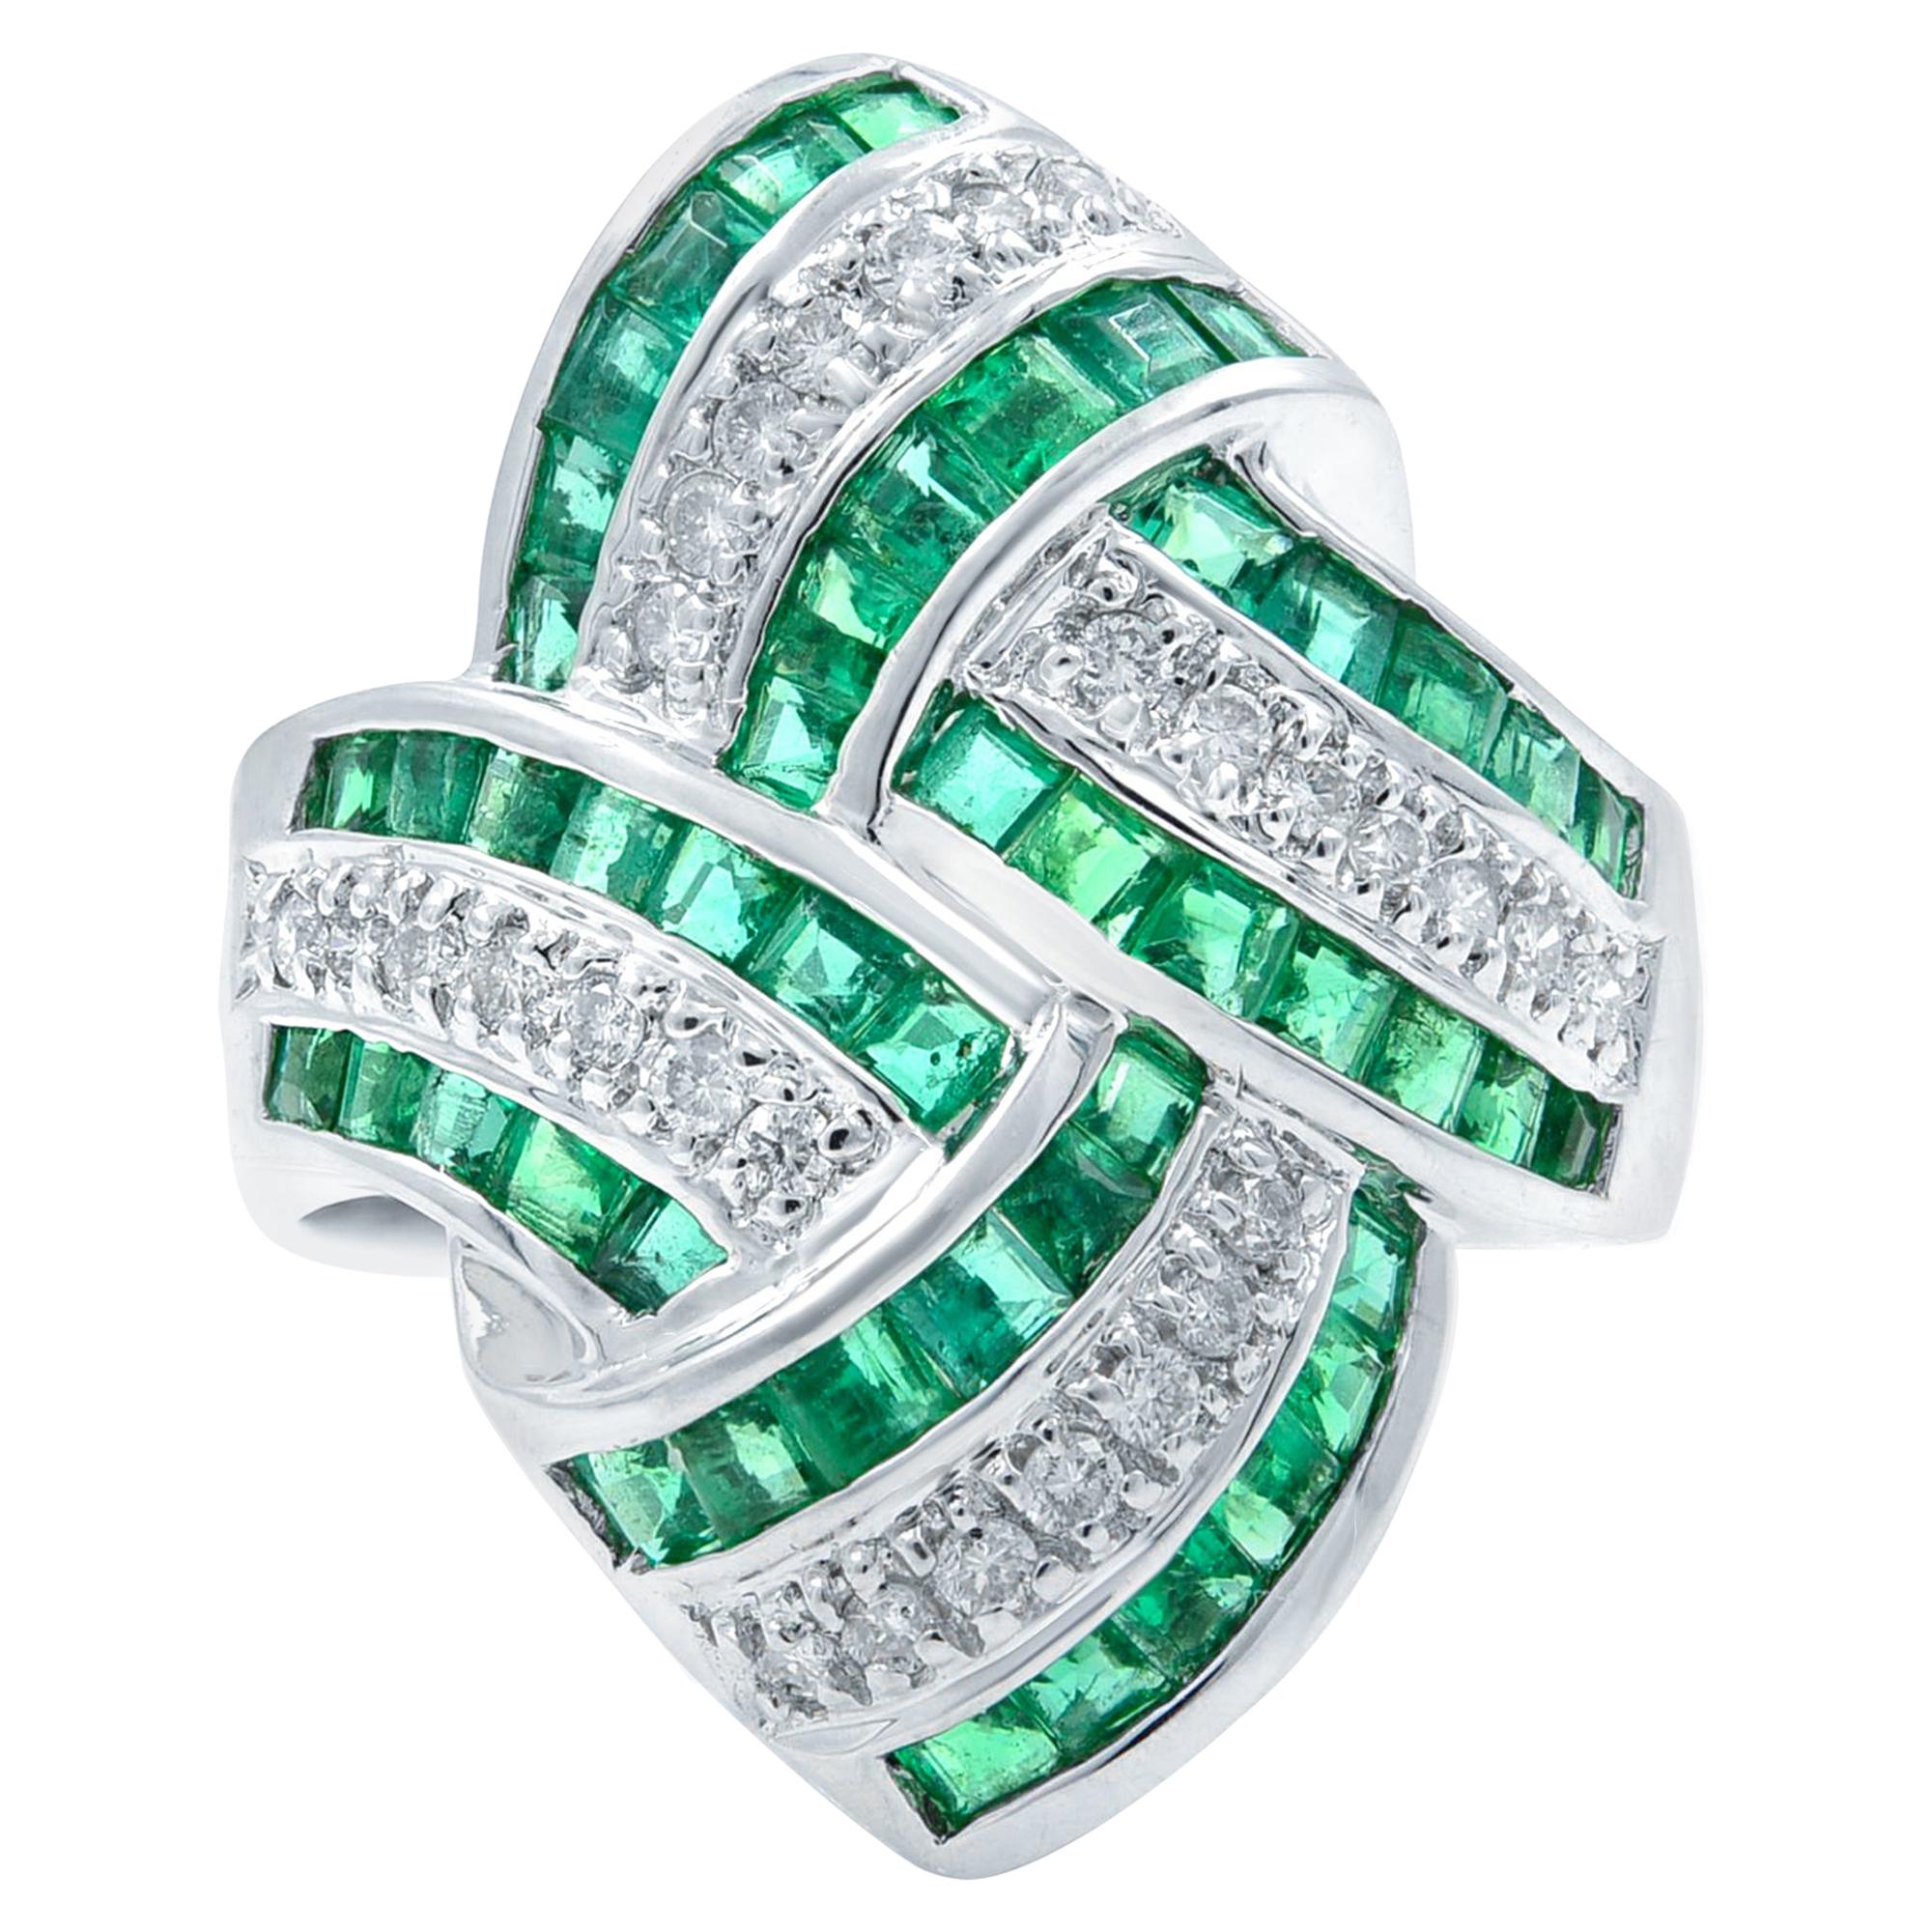 Green Emerald Diamond Statement 18 Karat White Gold 1.92 Carat Ring